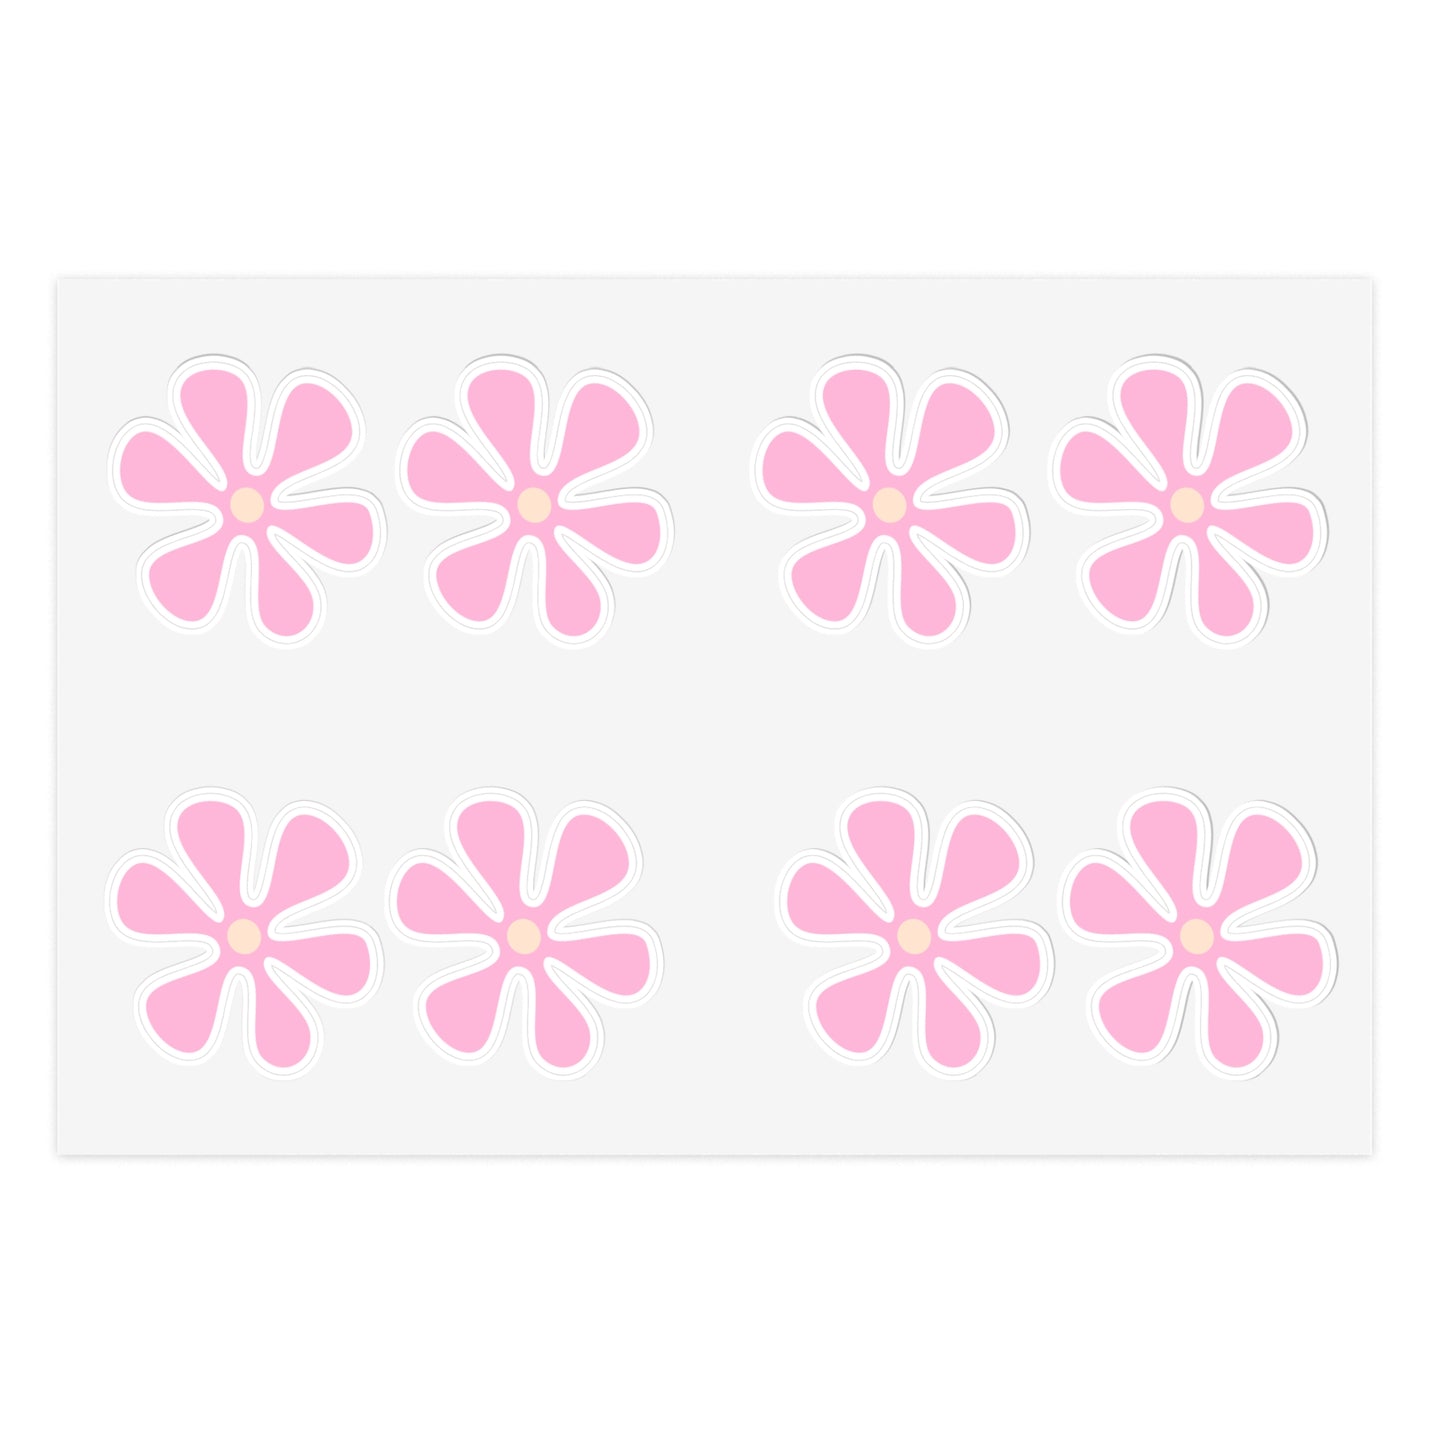 Cute Retro Pink Flower Stickers - Die Cut Sticker Sheet (2)